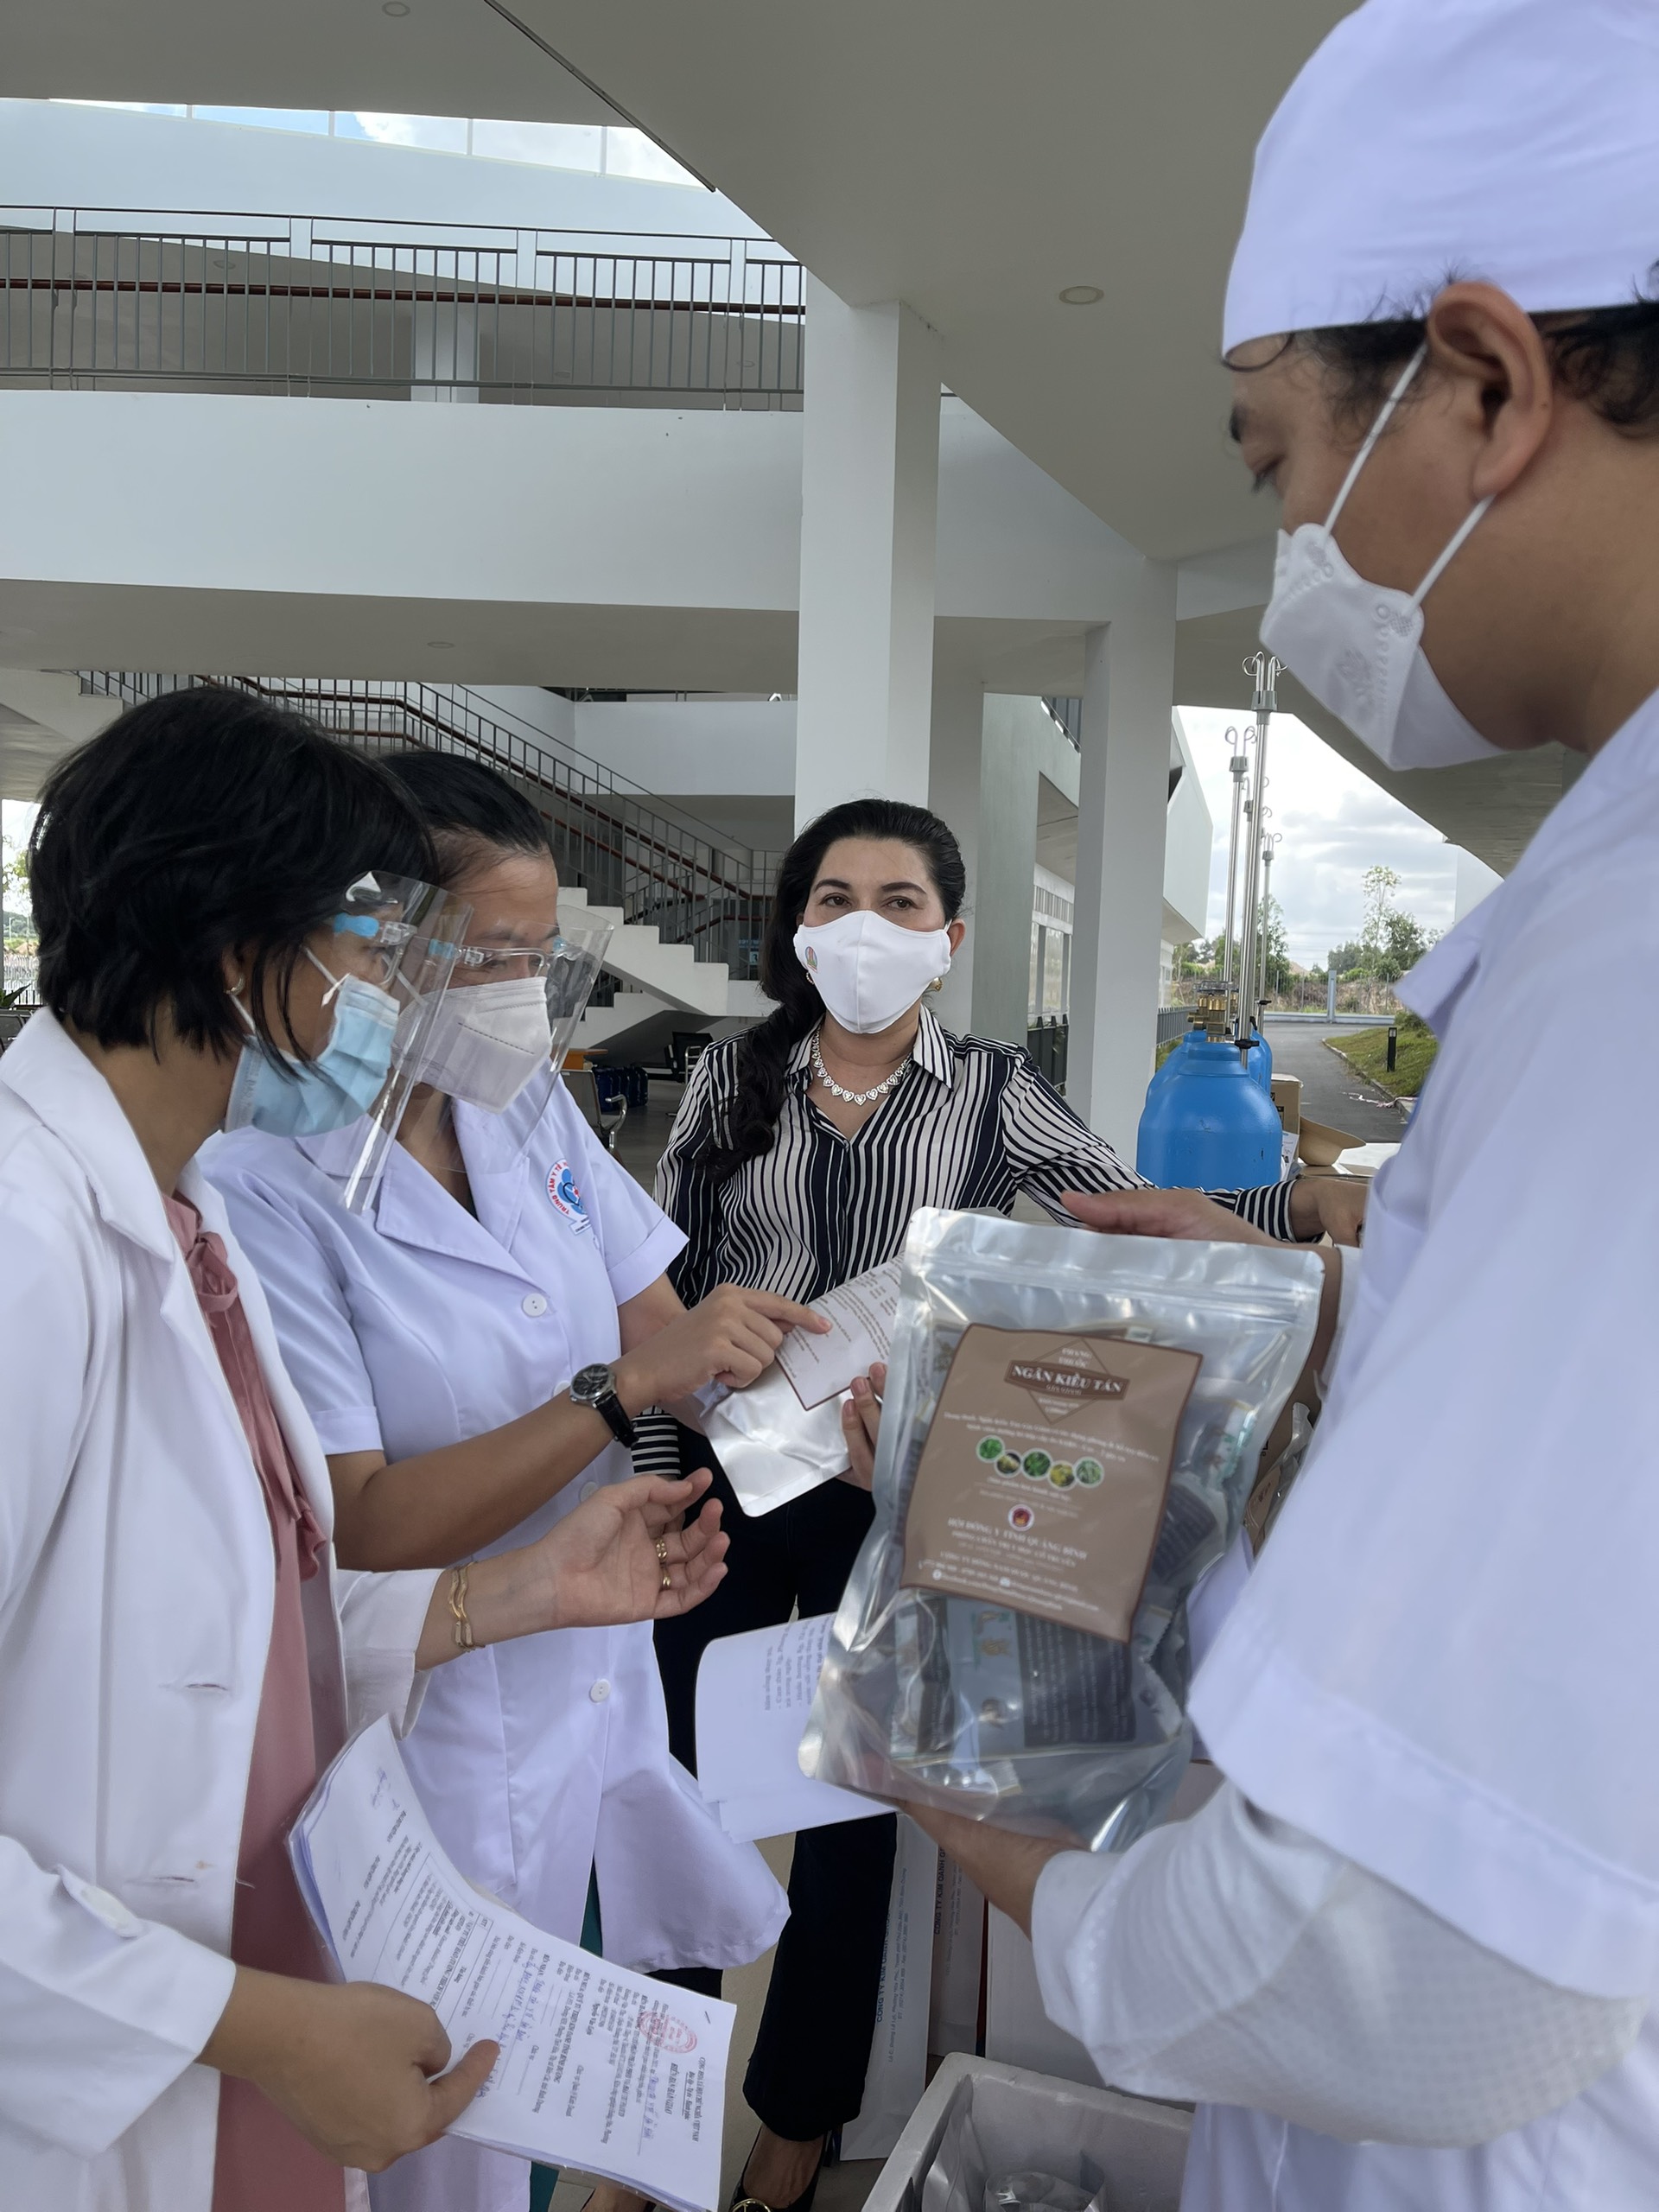 Quỹ từ thiện Kim Oanh hỗ trợ ngành y tế Bình Dương 2,1 tỷ đồng phòng chống Covid-19 - Ảnh 2.